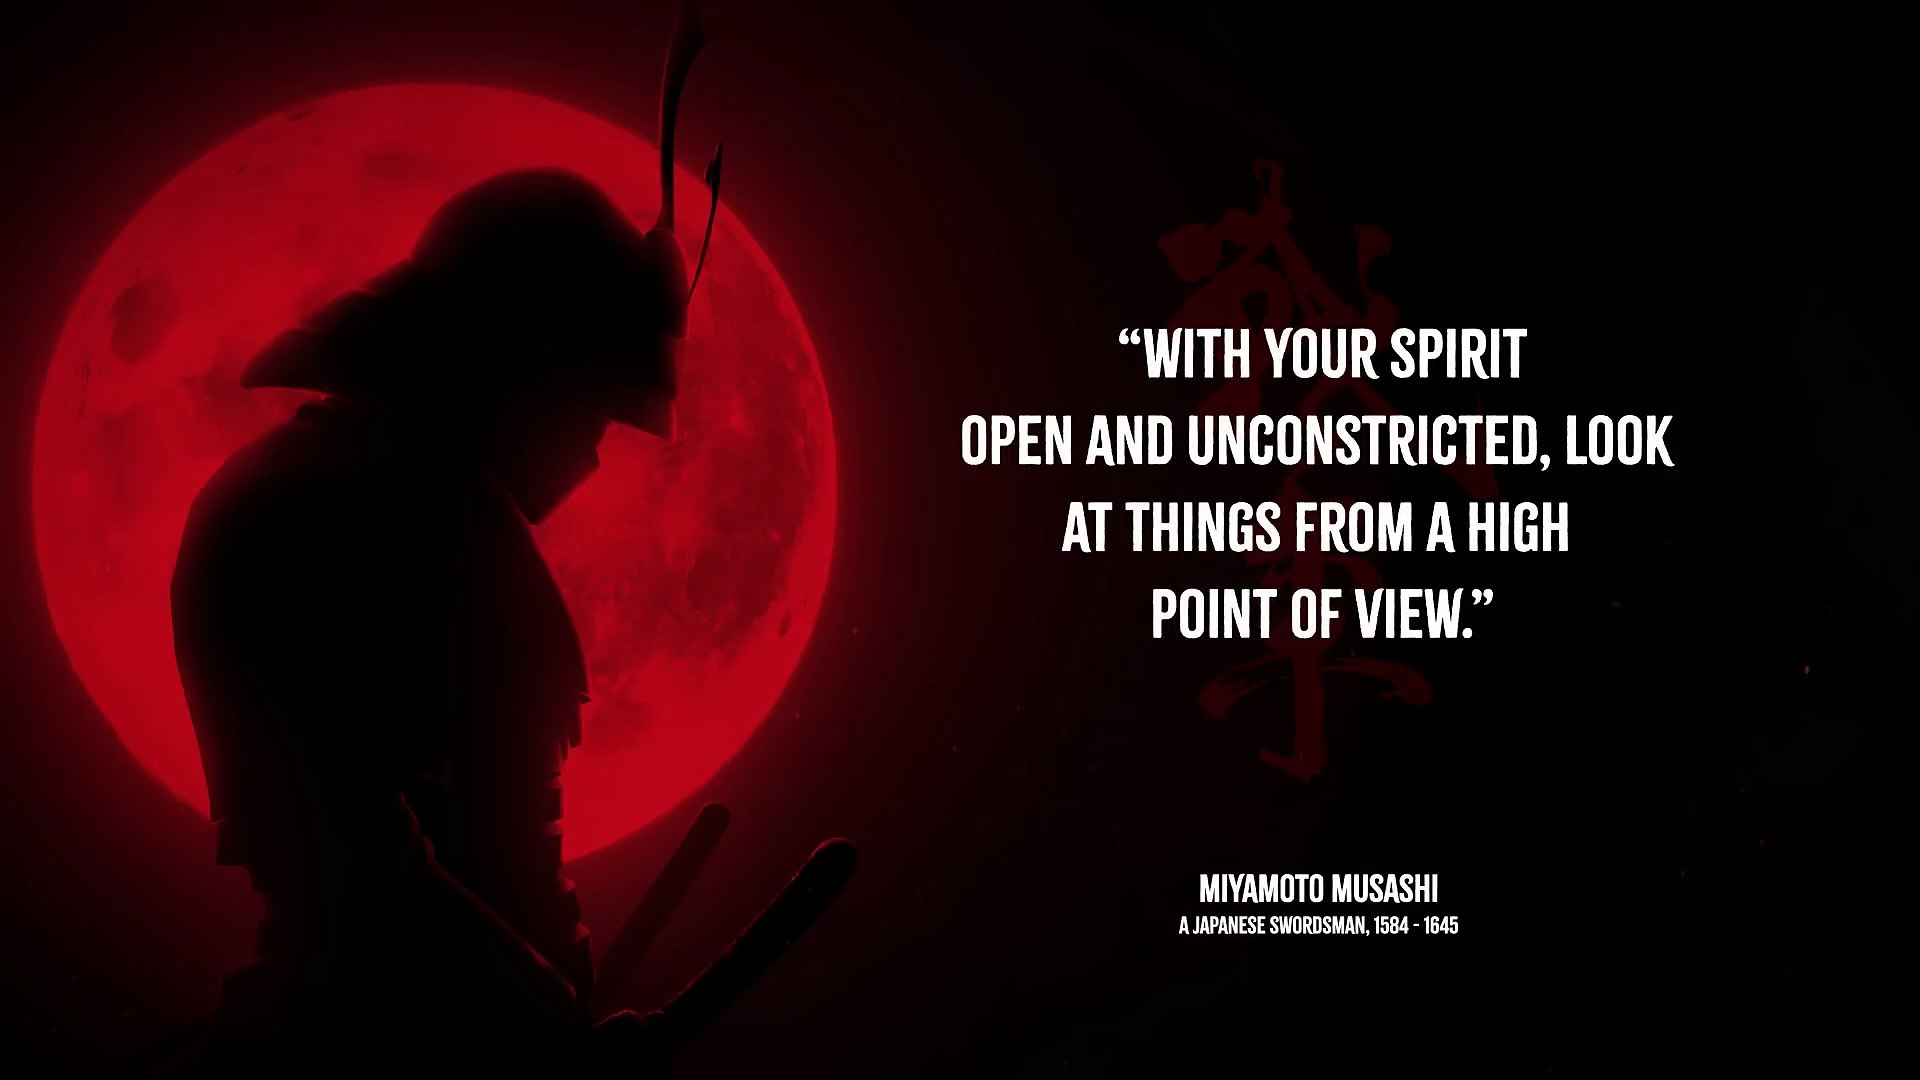 Miyamoto Musashi's Quotes to Strengthen